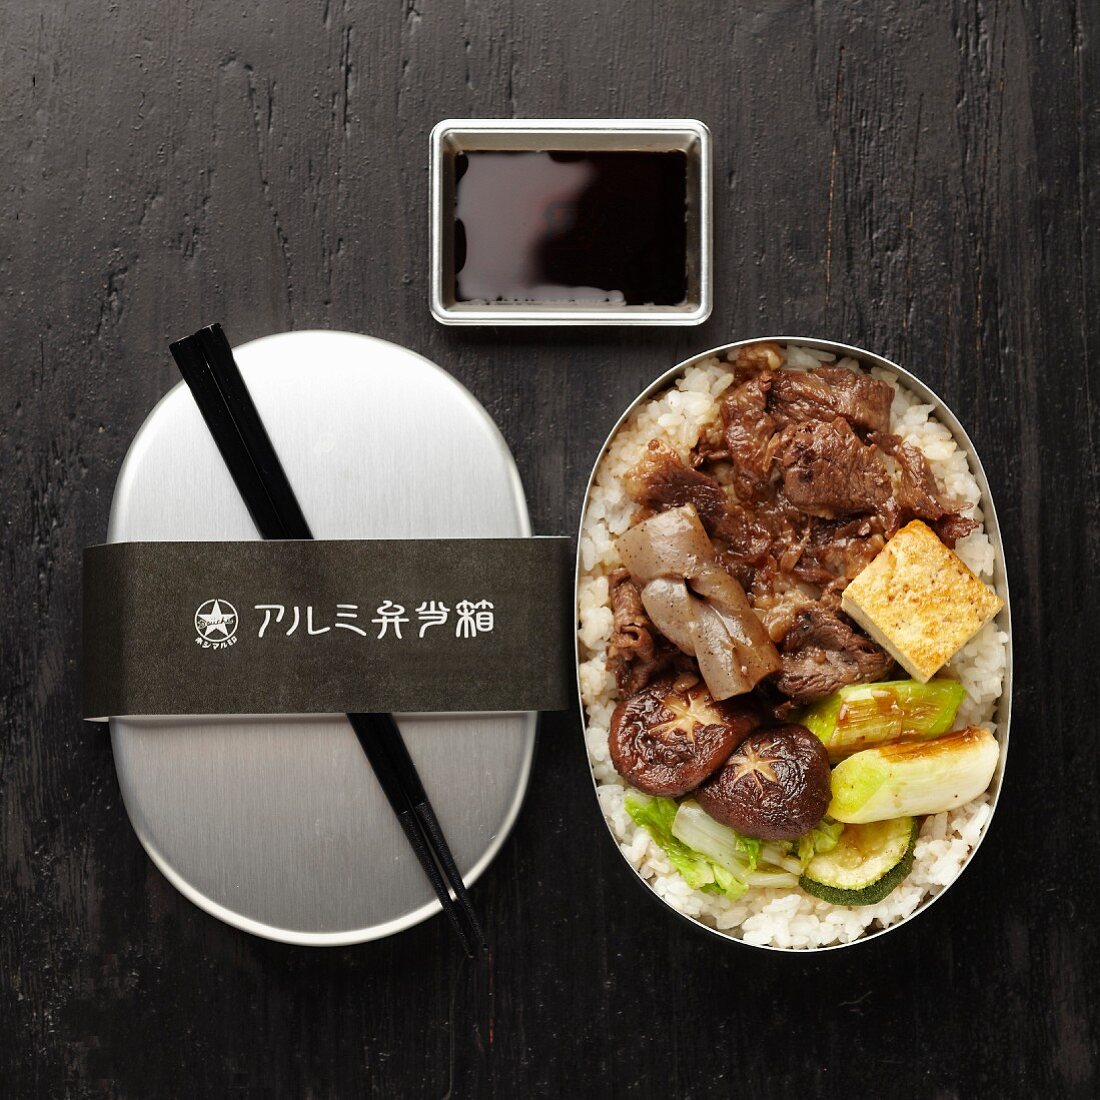 Bento-Box mit Rindfleisch-Sukiyaki, Gemüse und Reis